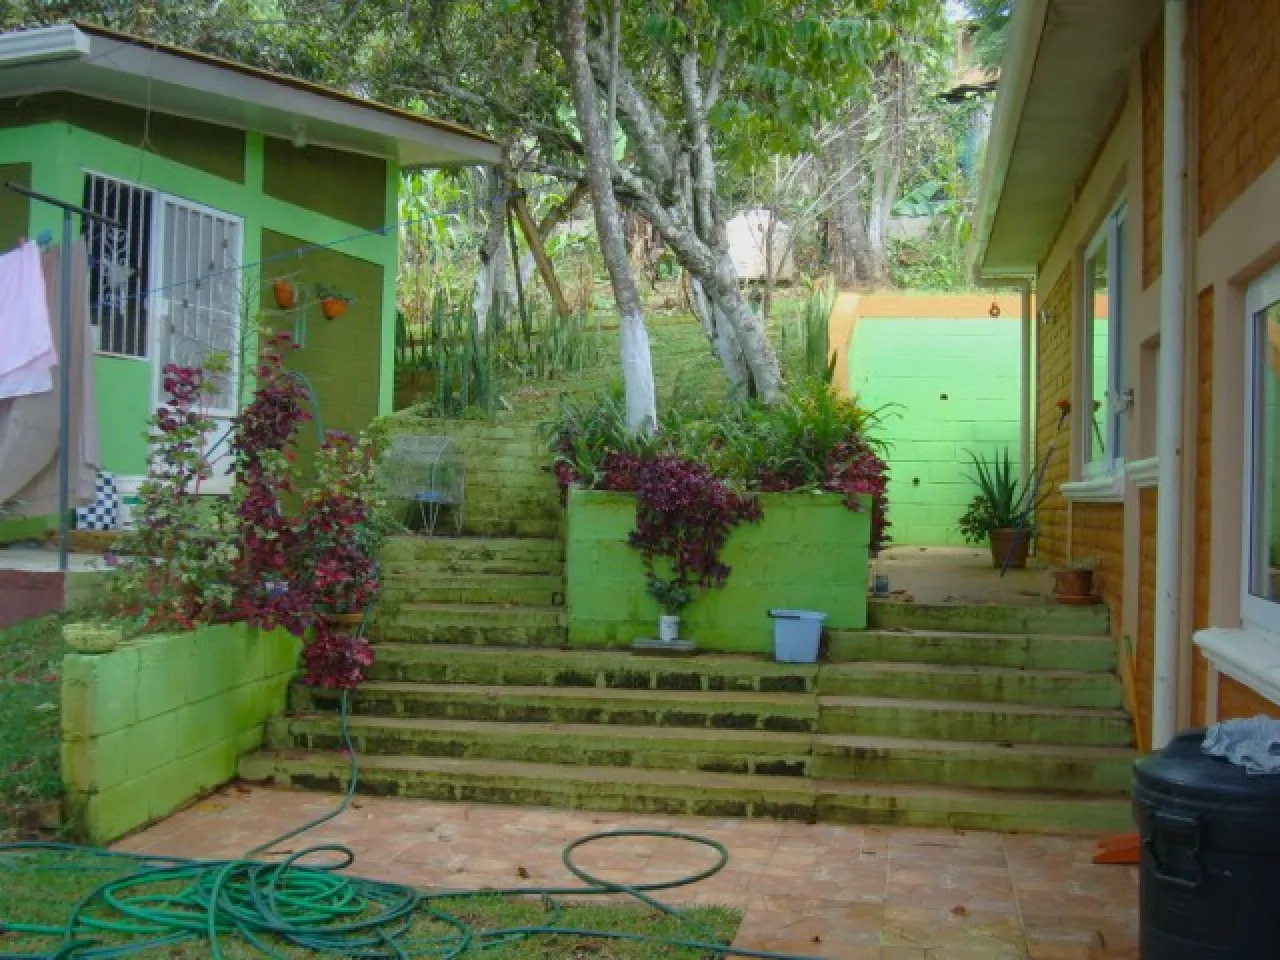 Área de jardín cuenta con gradas y paredes de color verde con naranja y diferentes árboles y área verde.